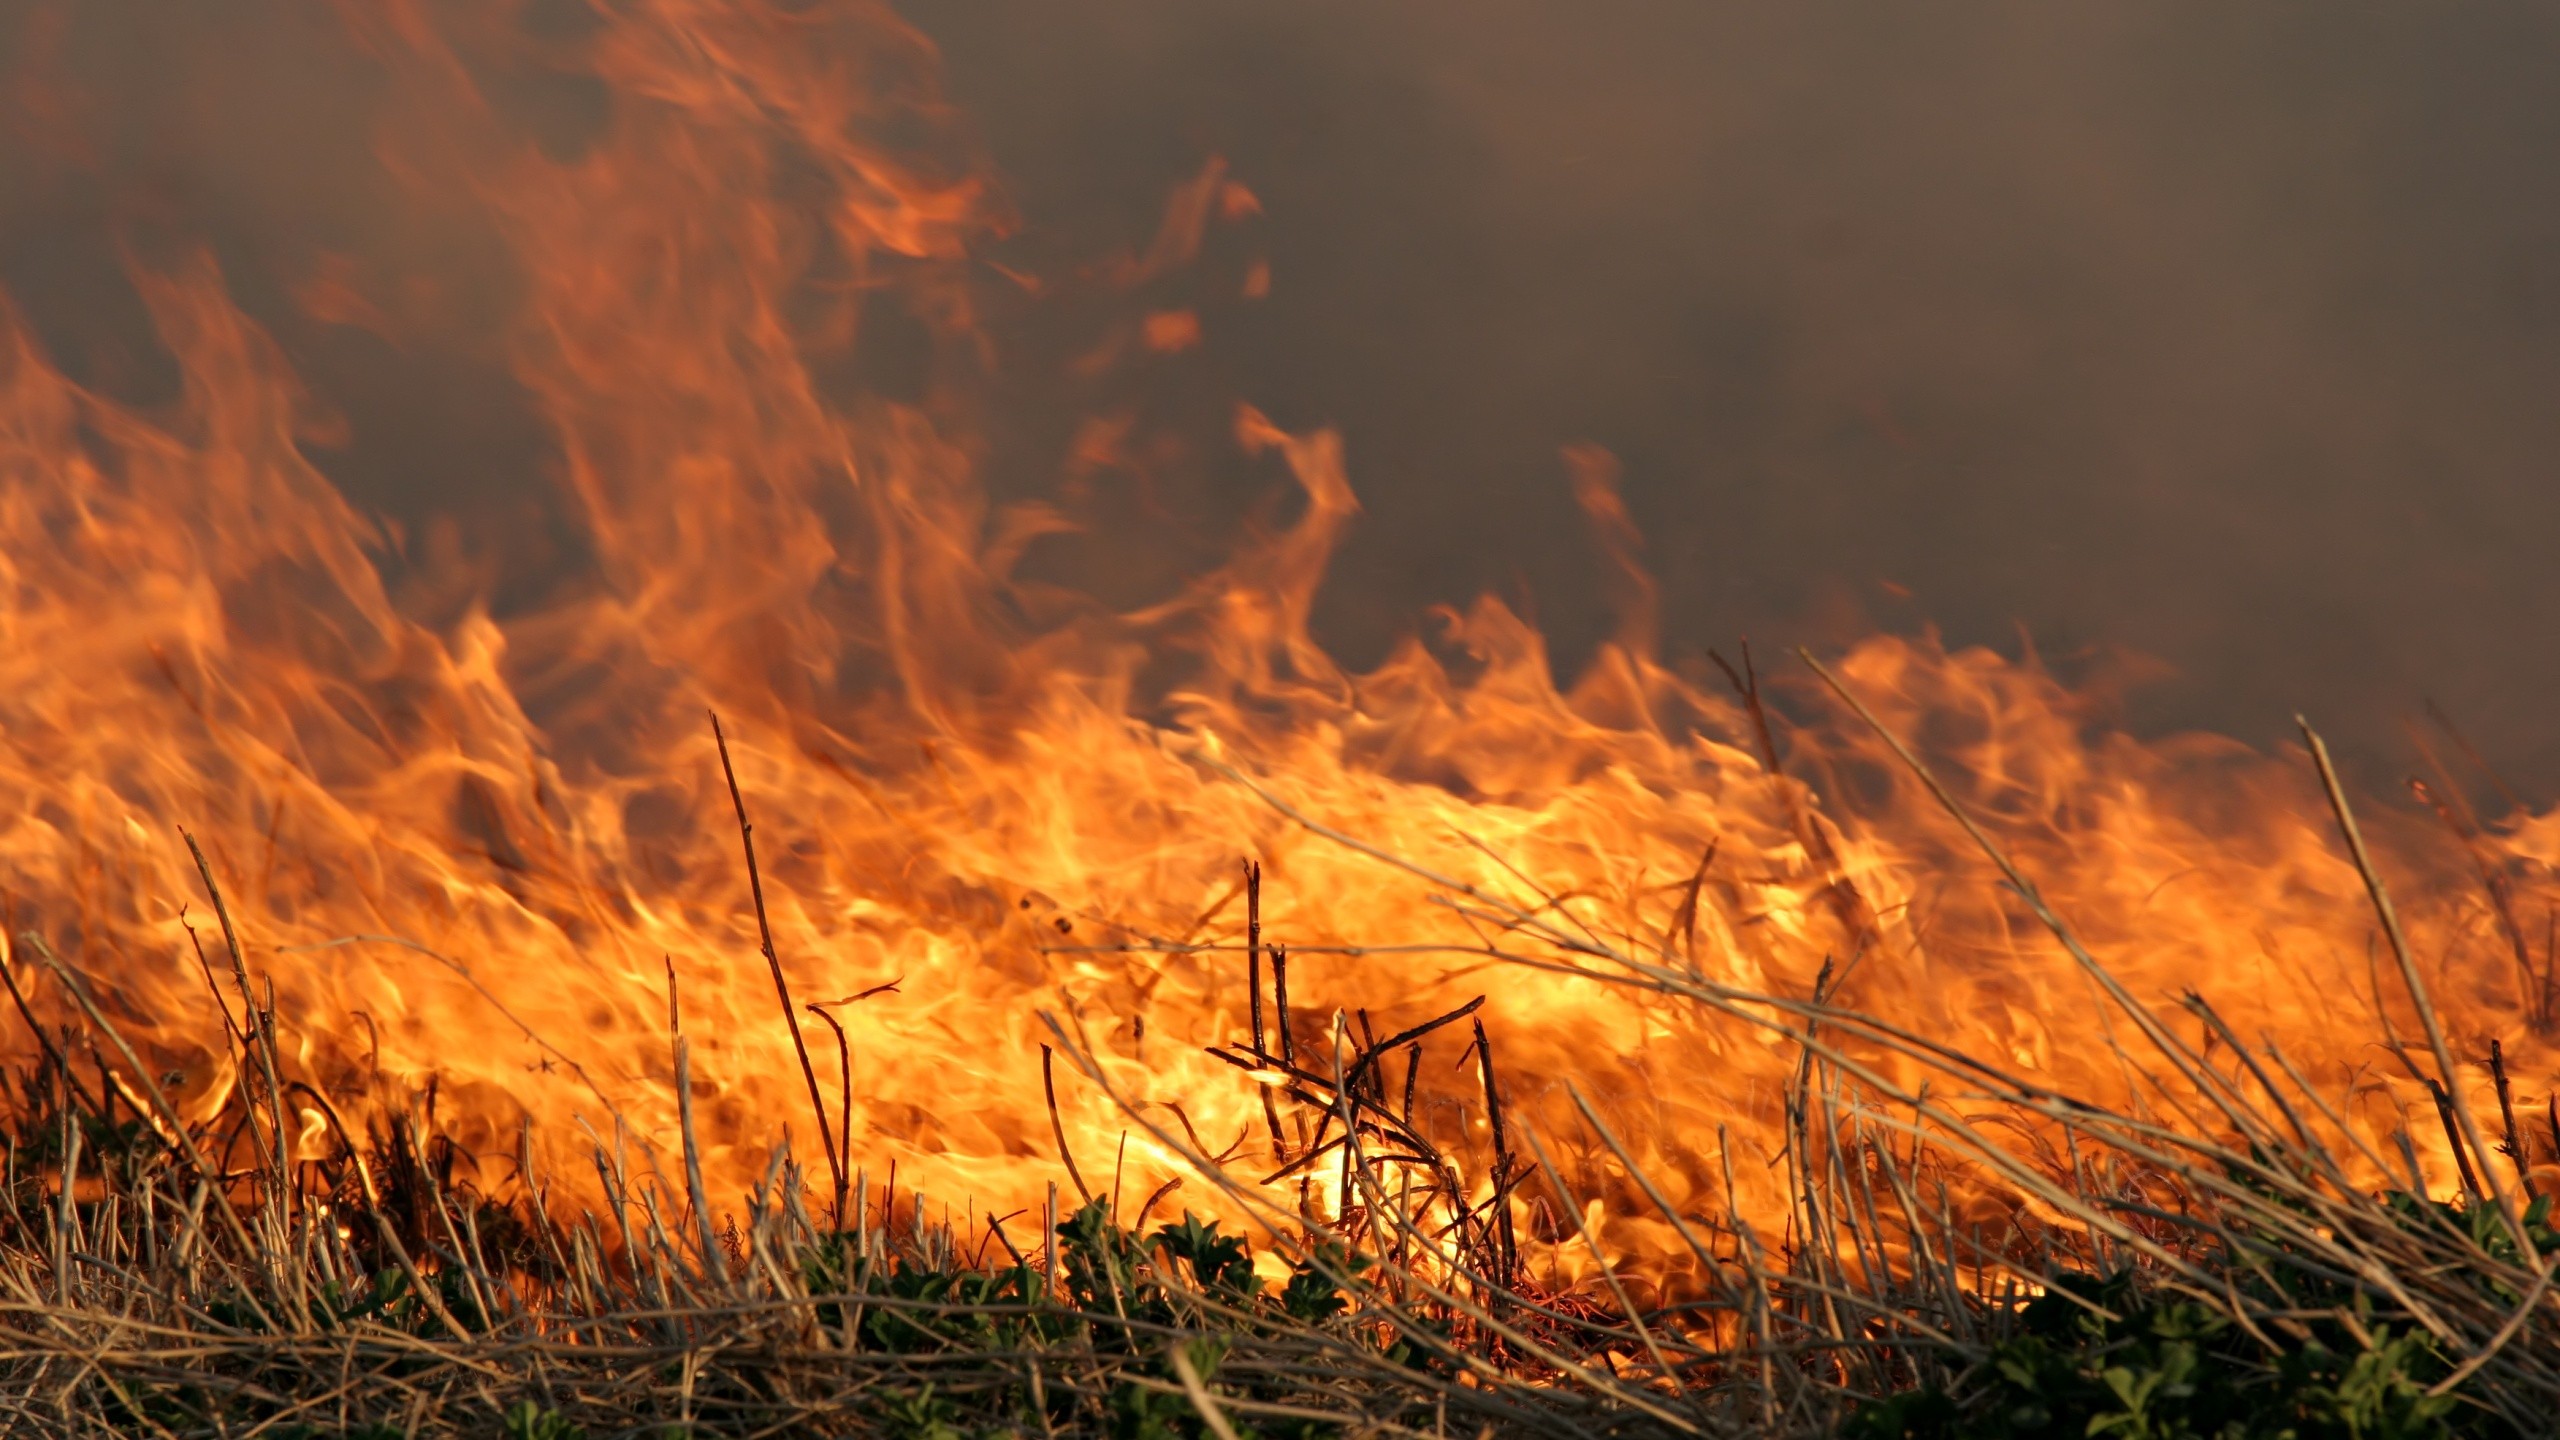 Vegetation fire near Orangevale bluffs Sunday evening 